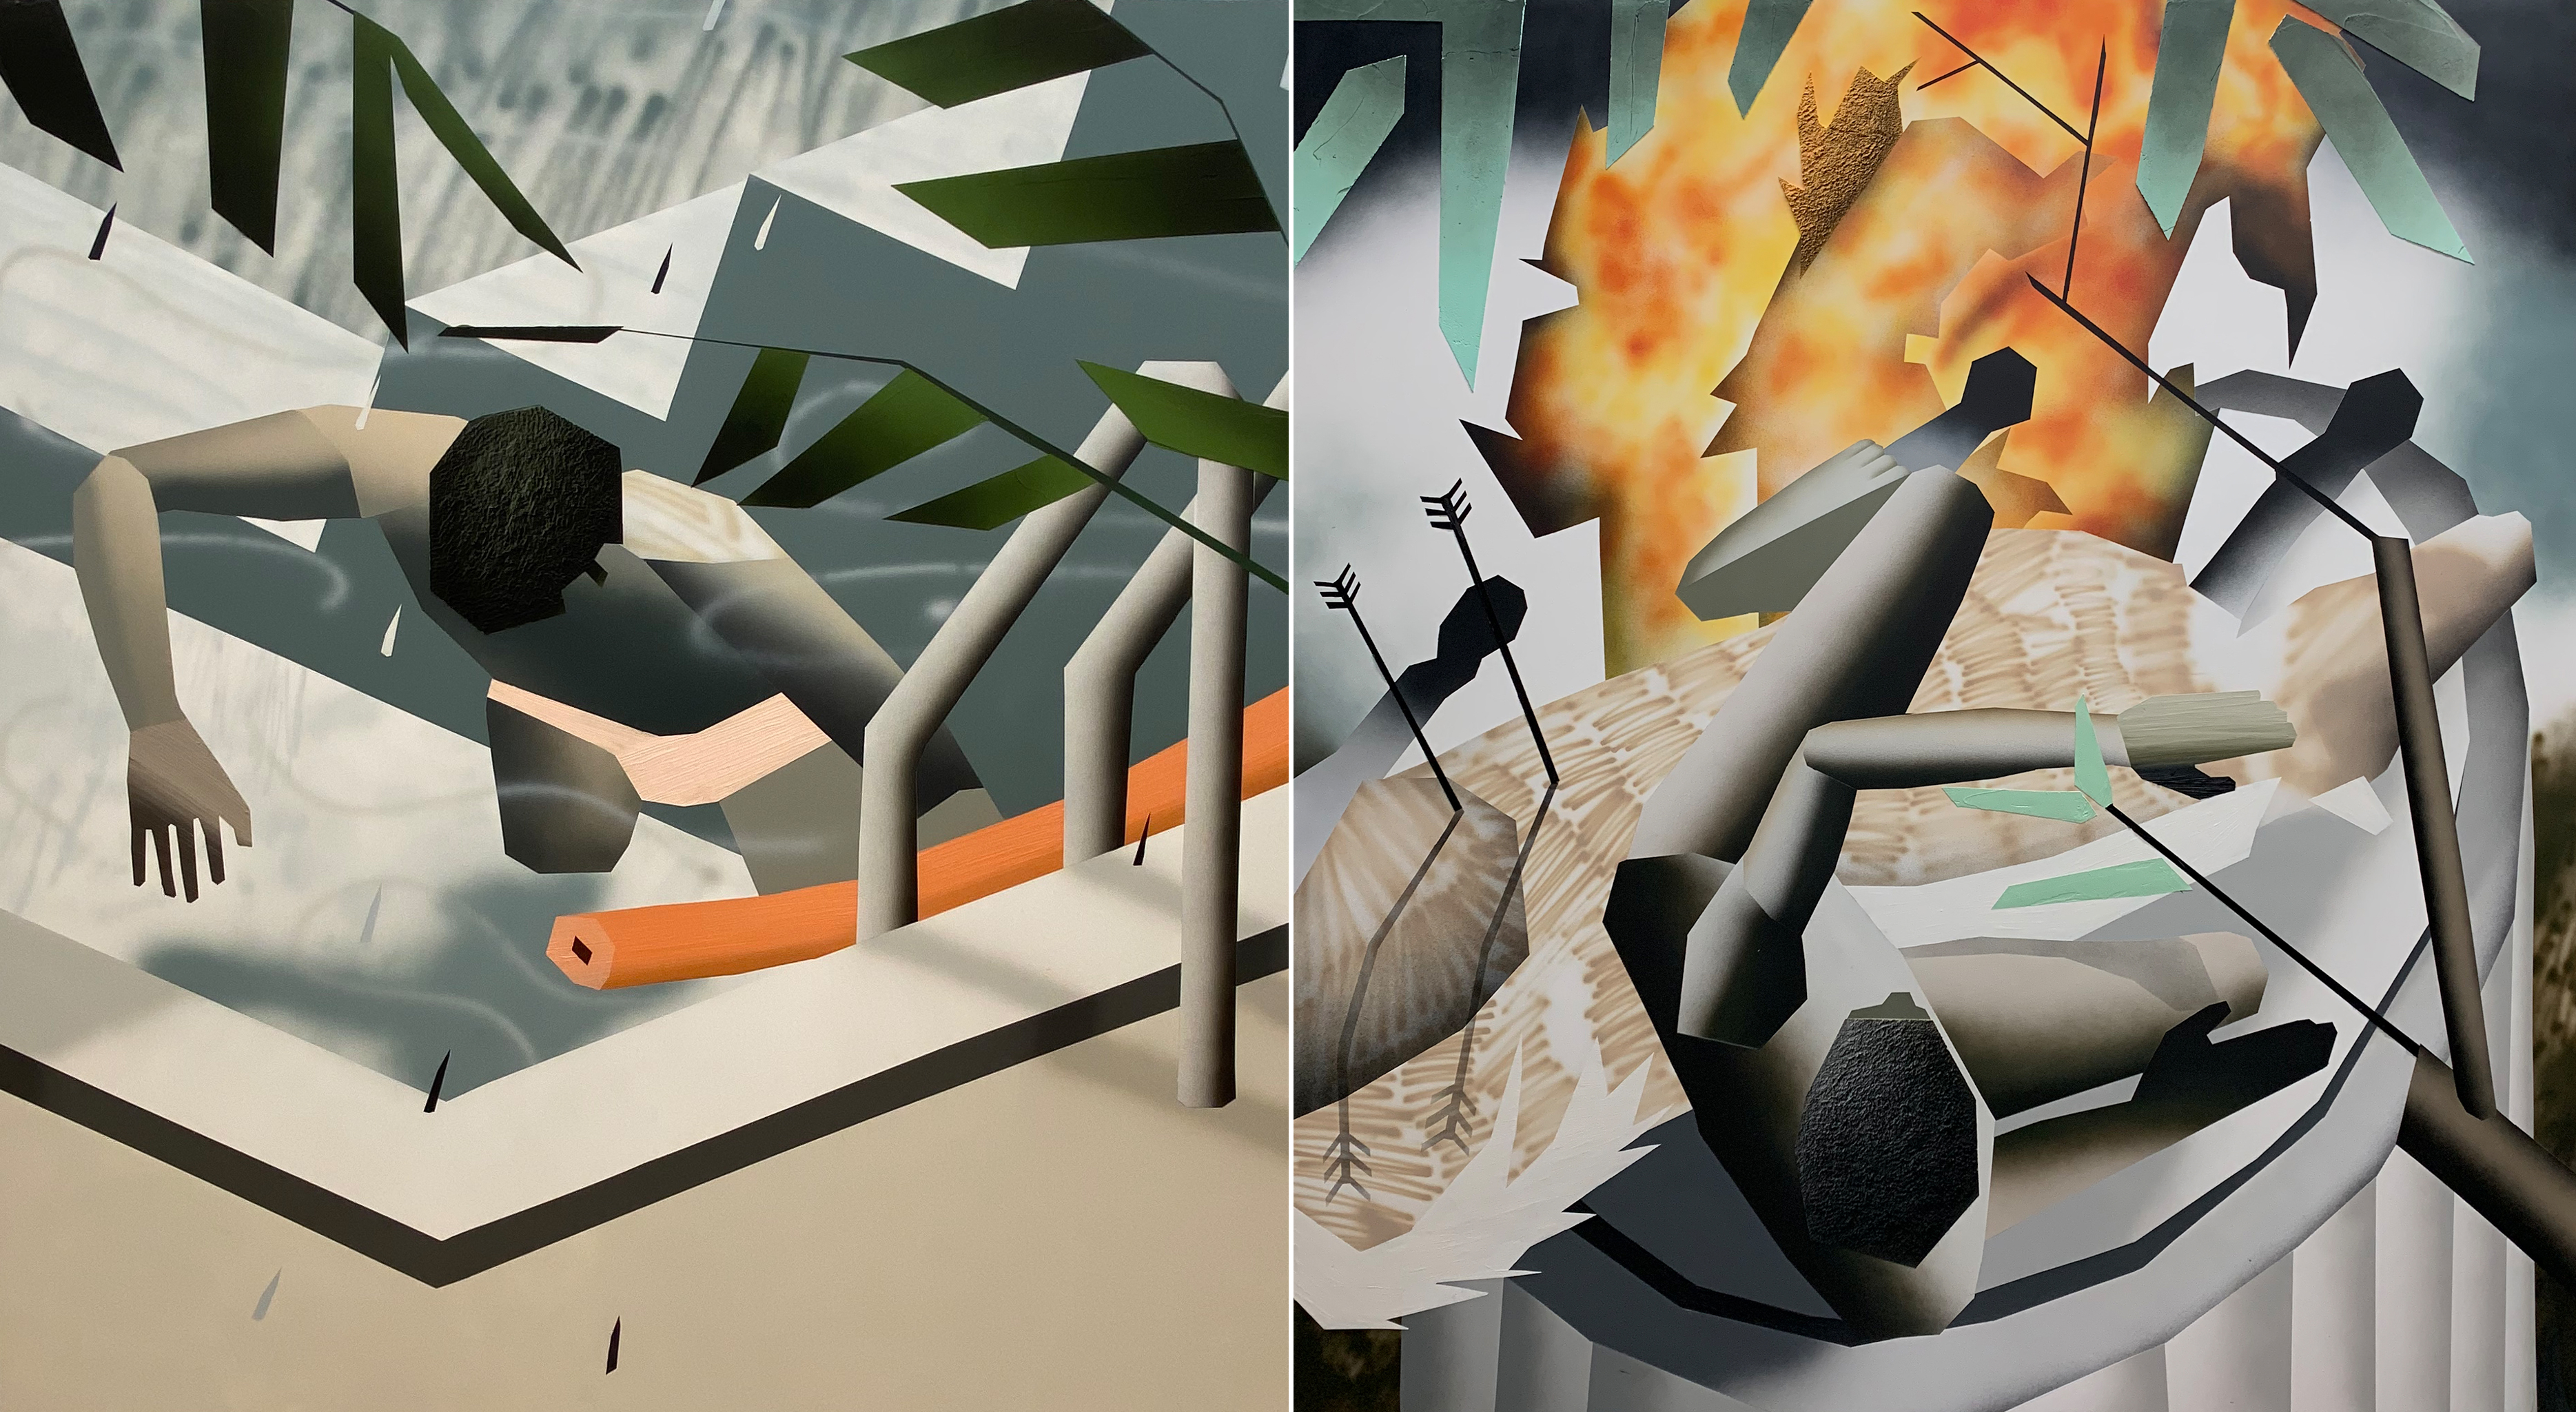 Zwei Gemälde von Brandon Lipchick. Links treibt ein Körper im Pool, rechts wird er von Pfeilen durchbohrt und Flammen lodern.